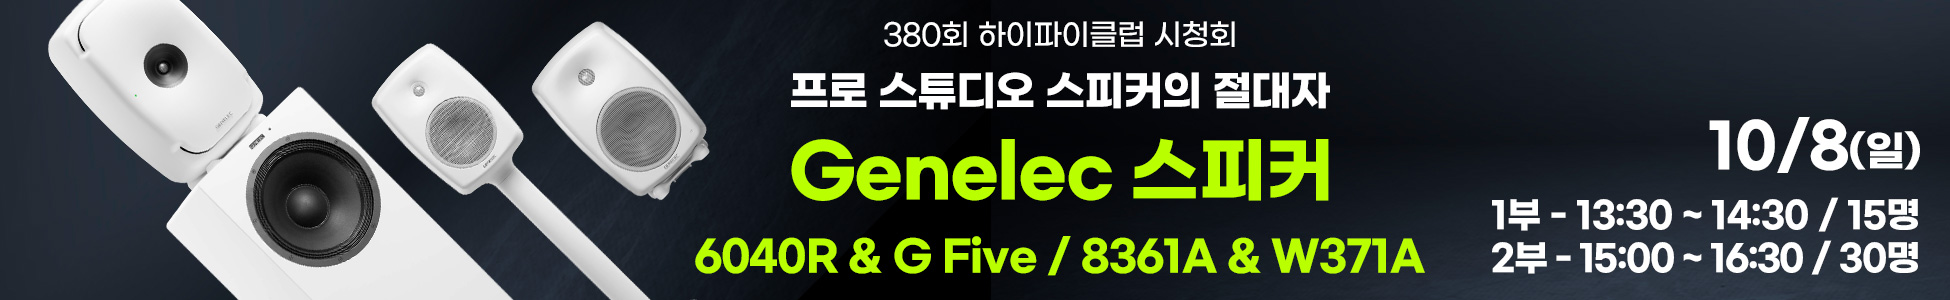 2부) Genelec 8361A & W371A 시청회